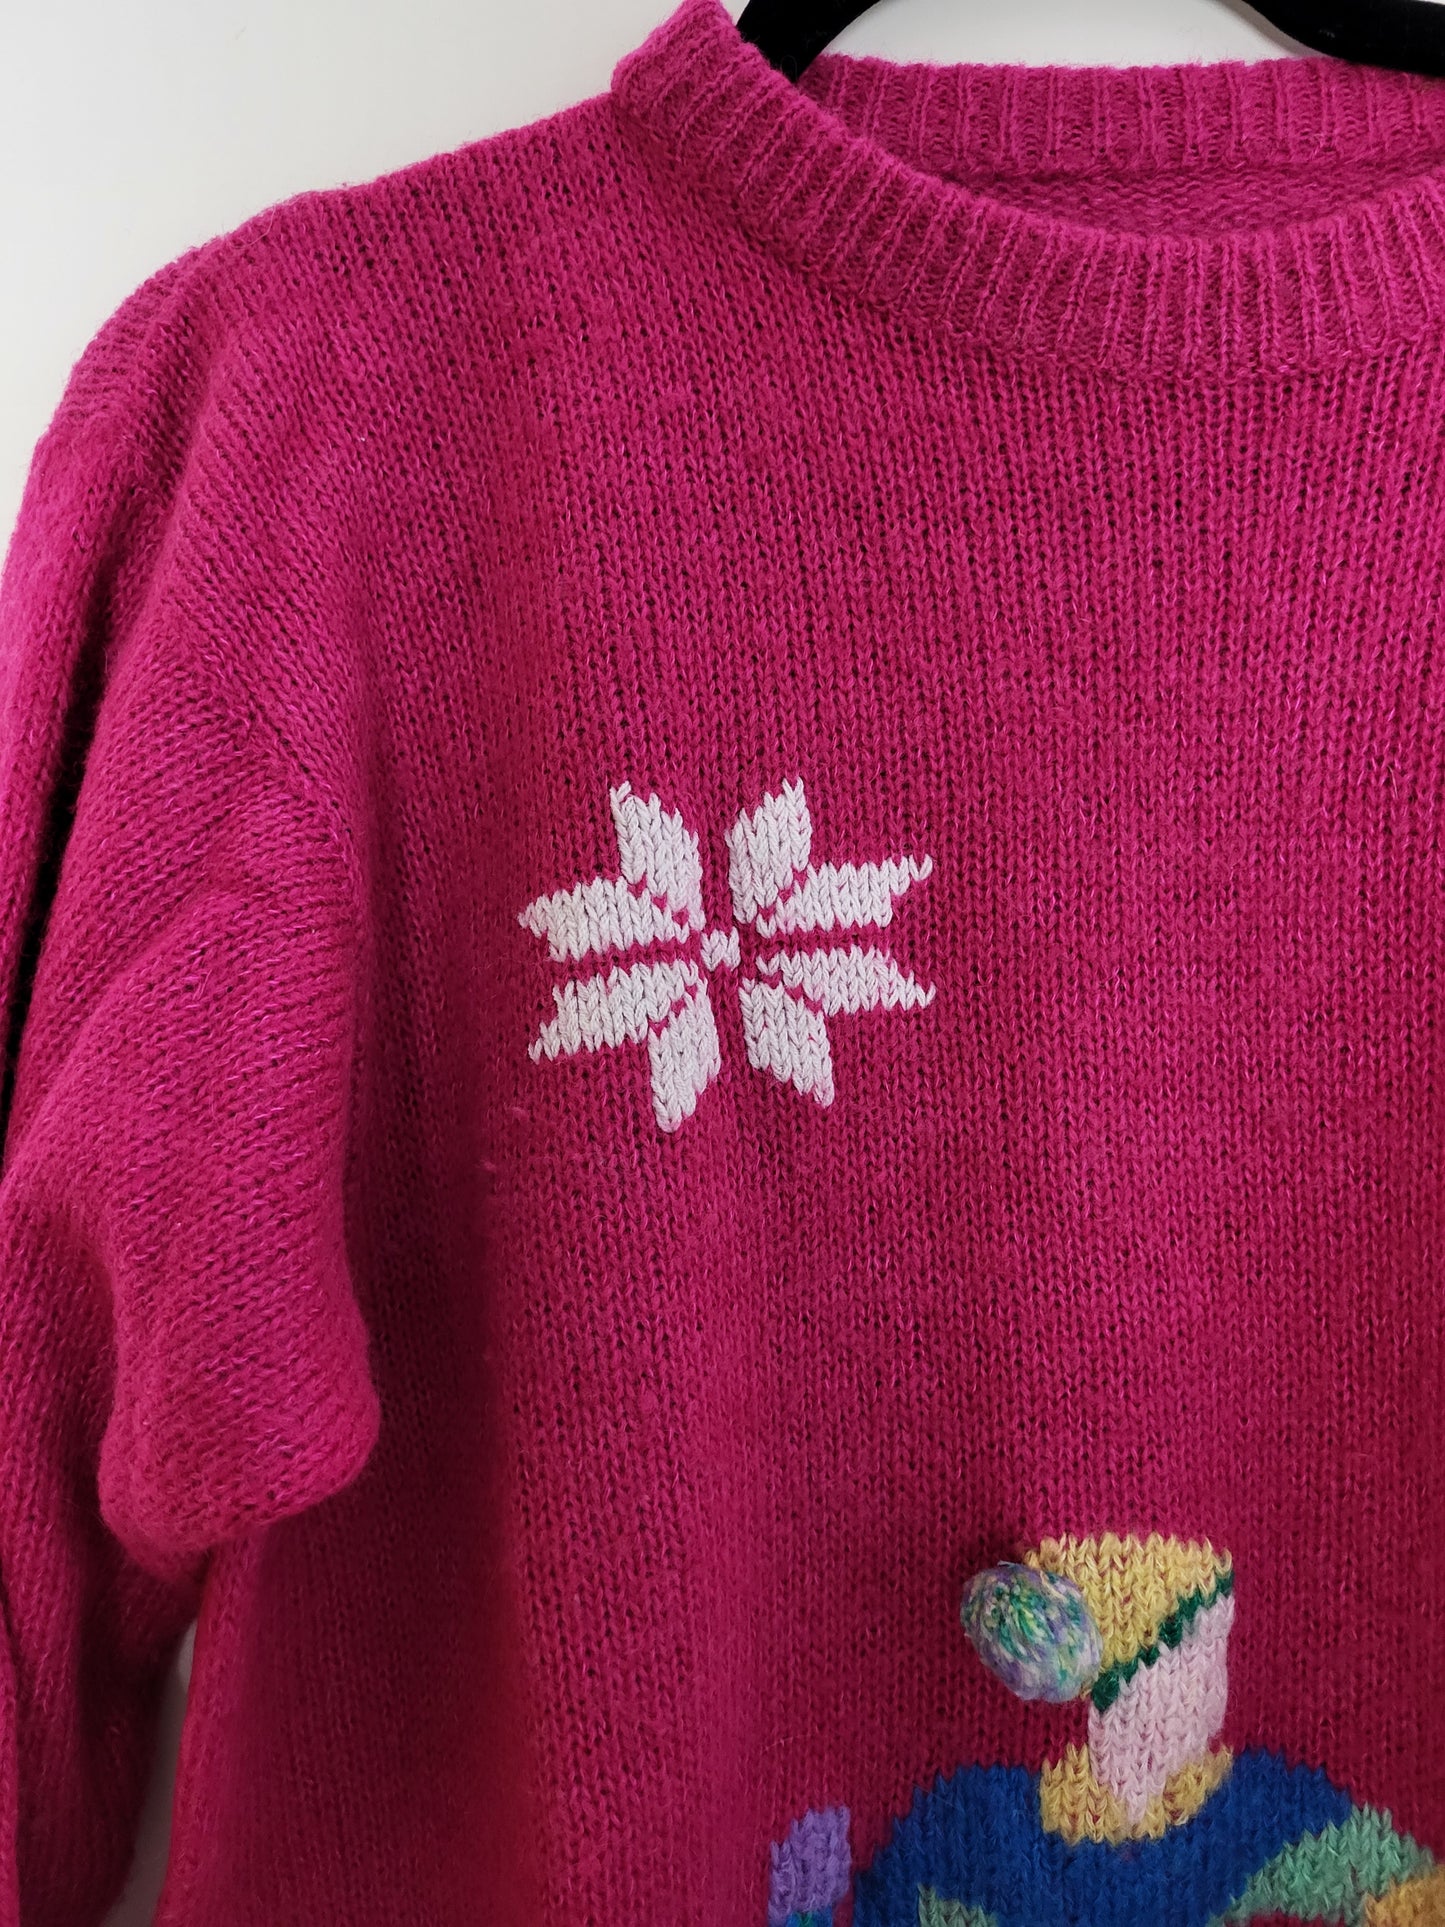 Vintage - Pullover - Muster - Vintage Wolle - Bunt - Damen - L